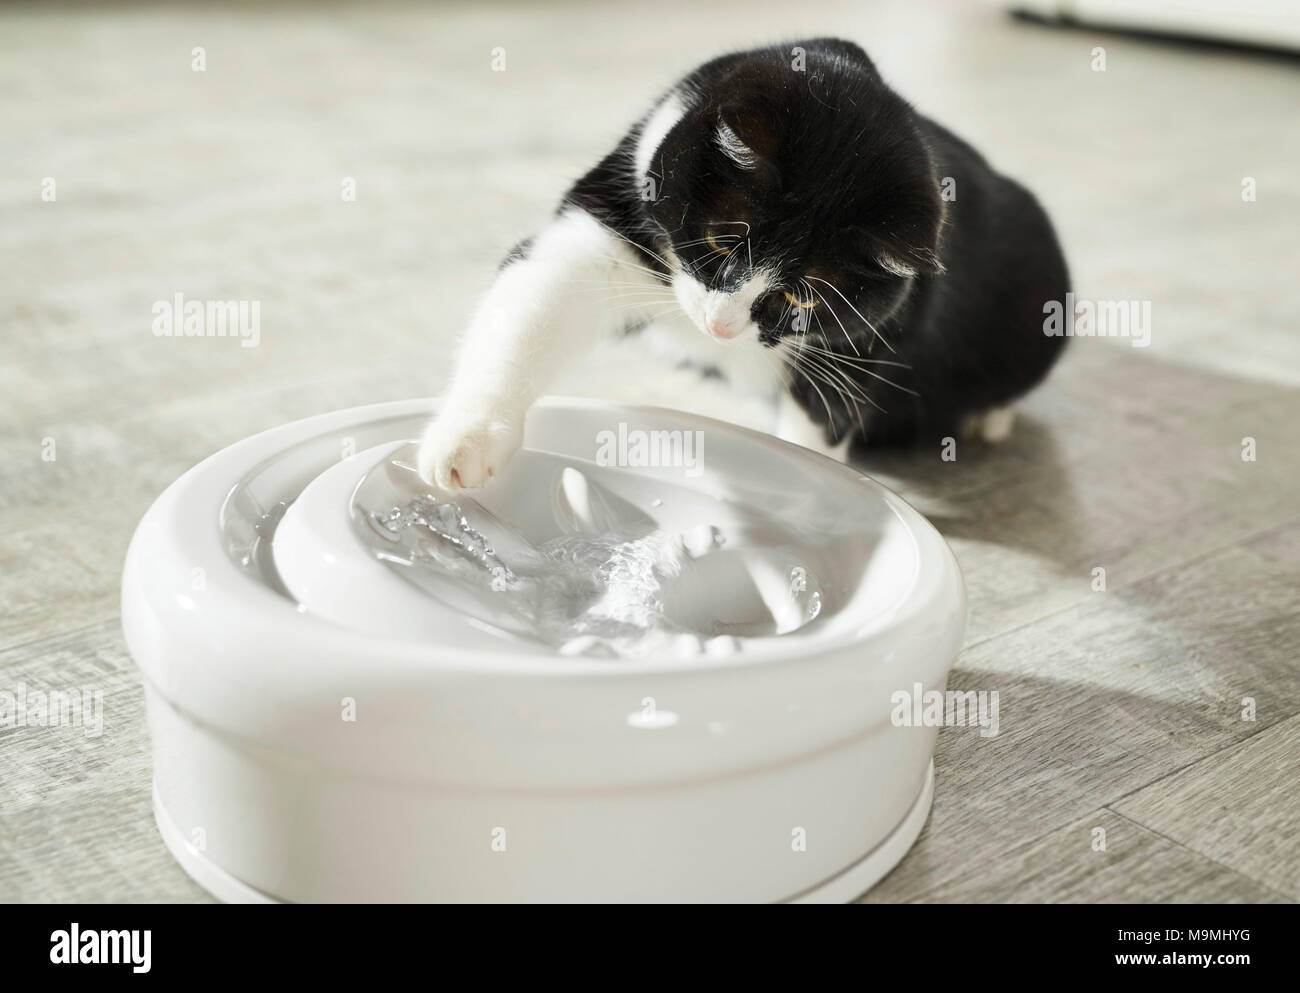 Chat domestique. Chat adulte jouant avec de l'eau à une fontaine intérieure. Allemagne Banque D'Images